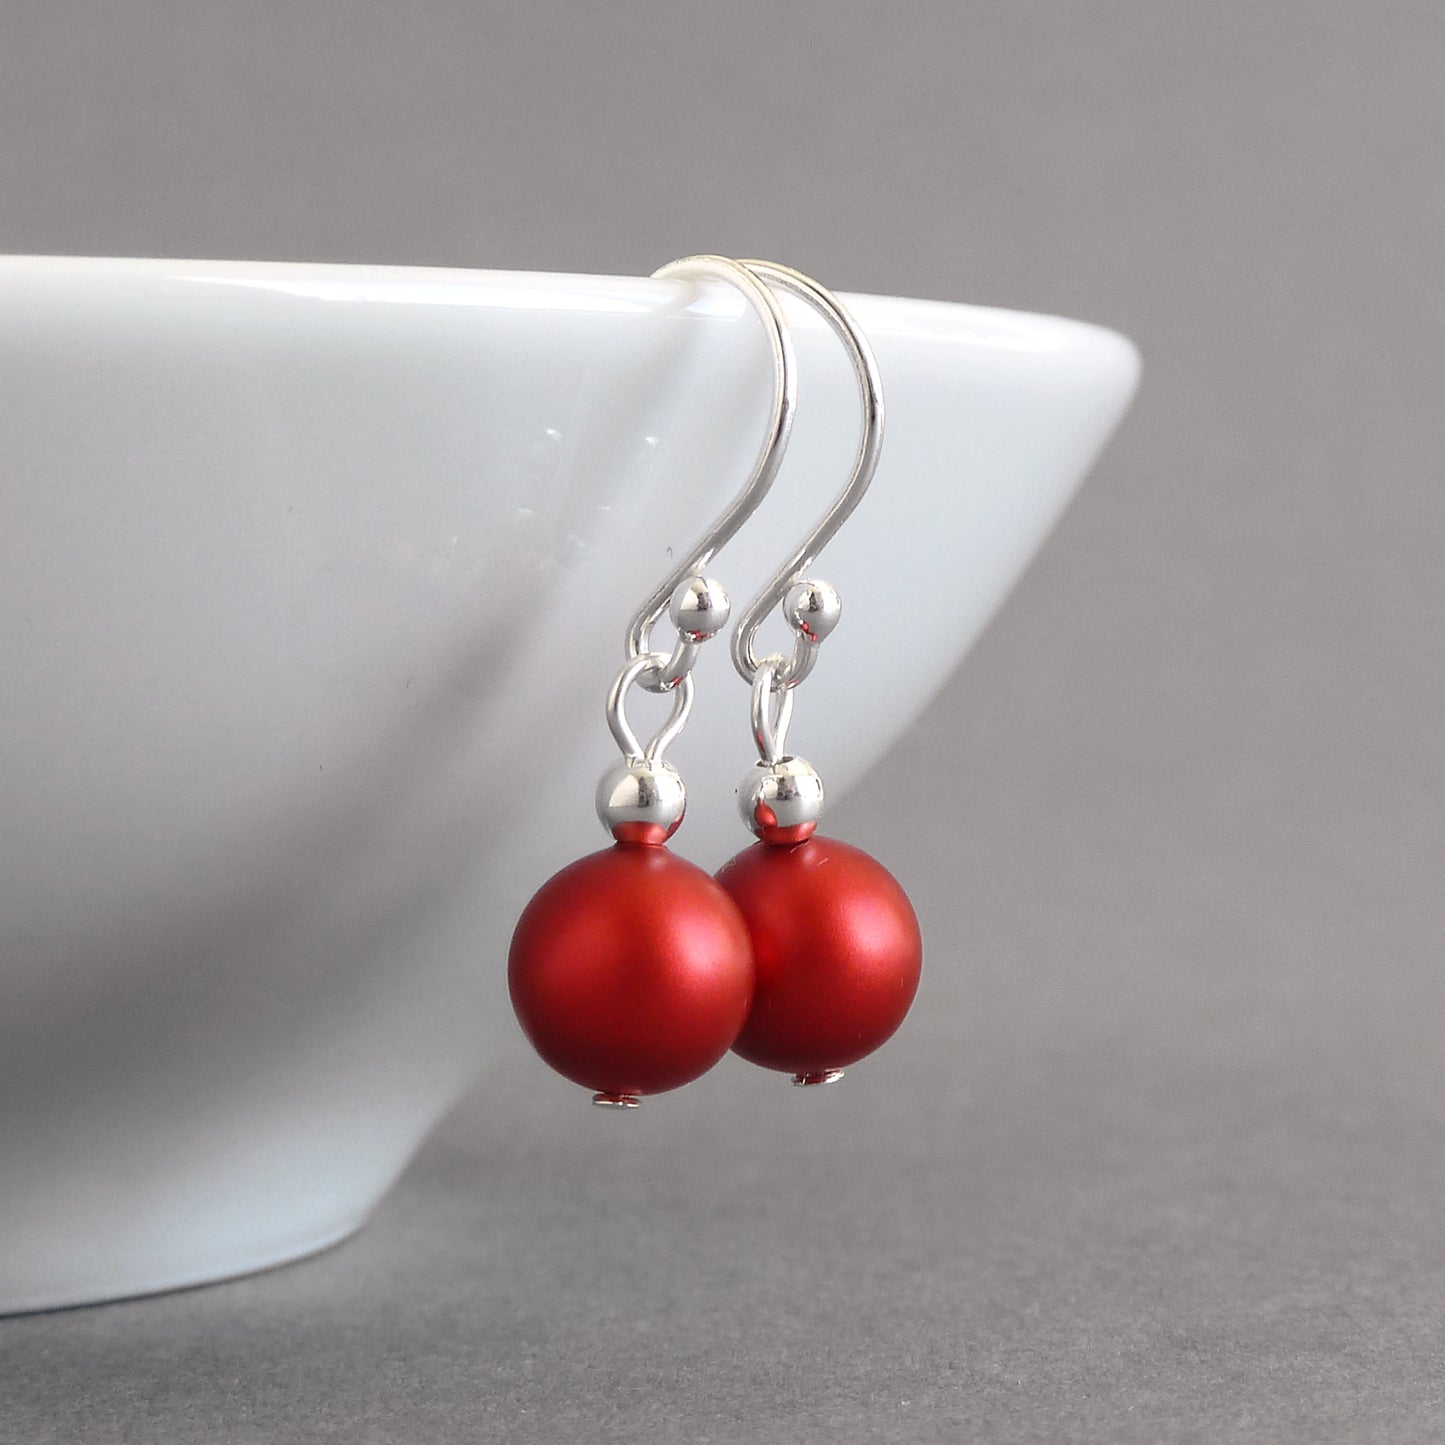 Simple bright red drop earrings